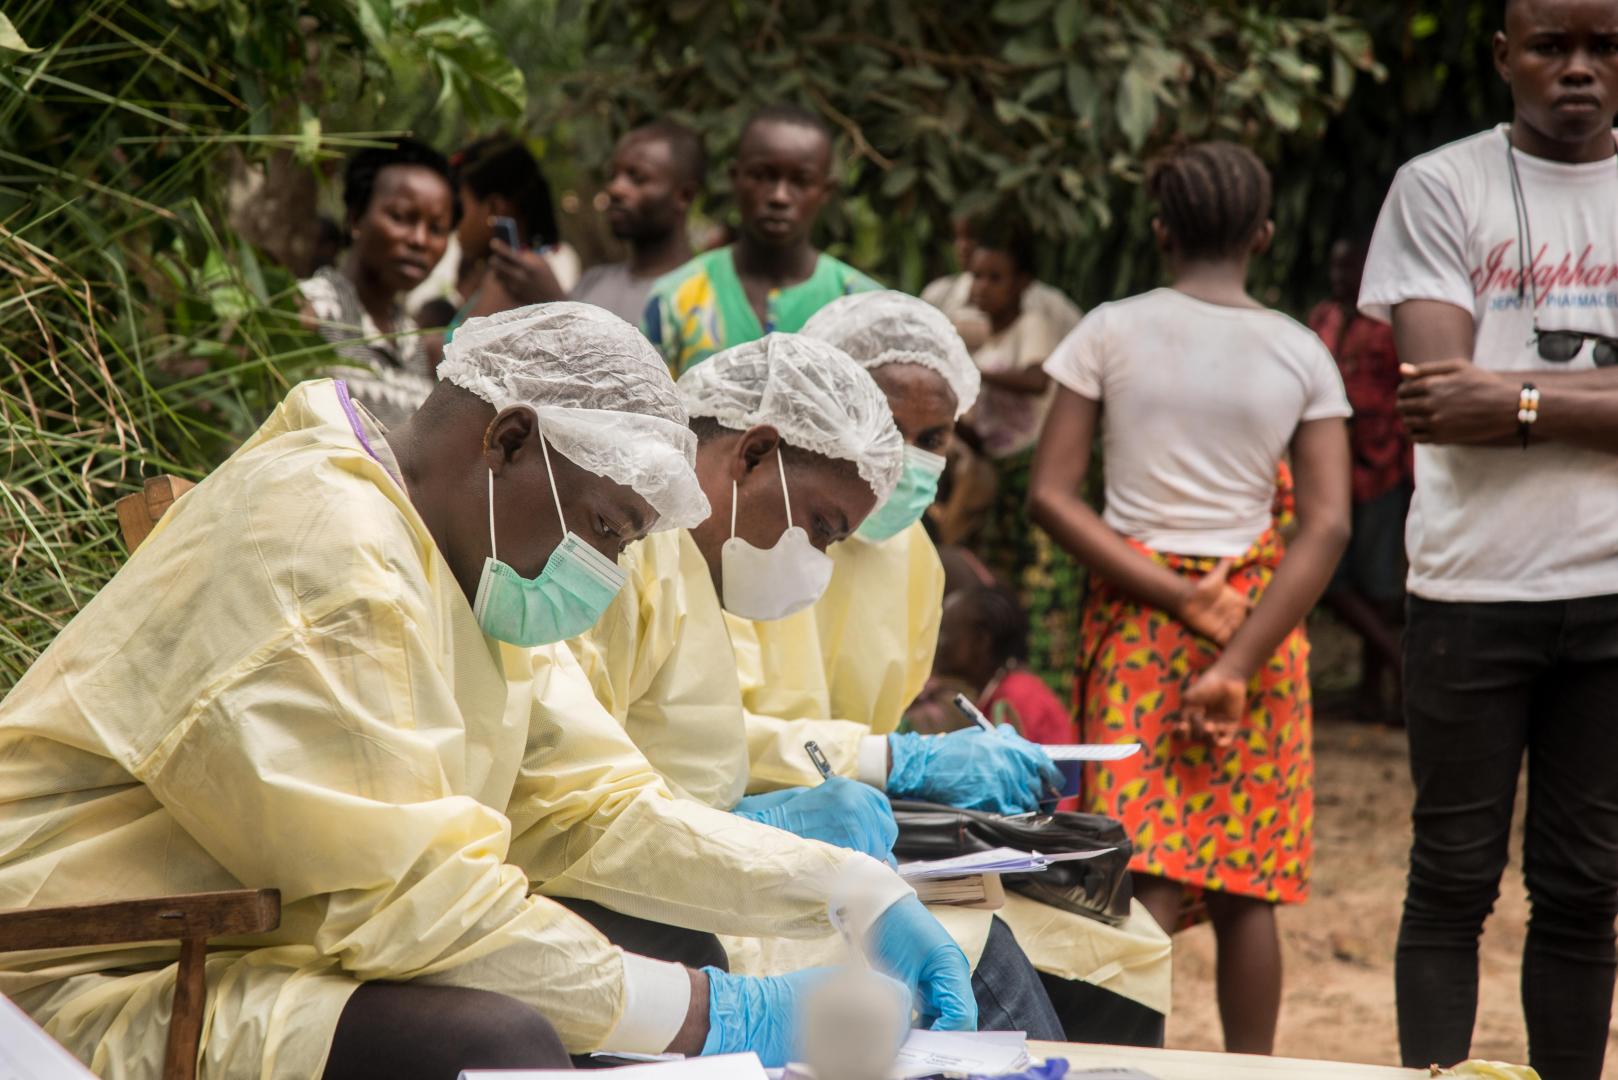 Läkararbetare förberedde och desinficerade ett hus i Moto, Bikoro, Equateur-provinsen, Demokratiska republiken Kongo, efter upptäckten av ett bekräftat fall av Ebola.